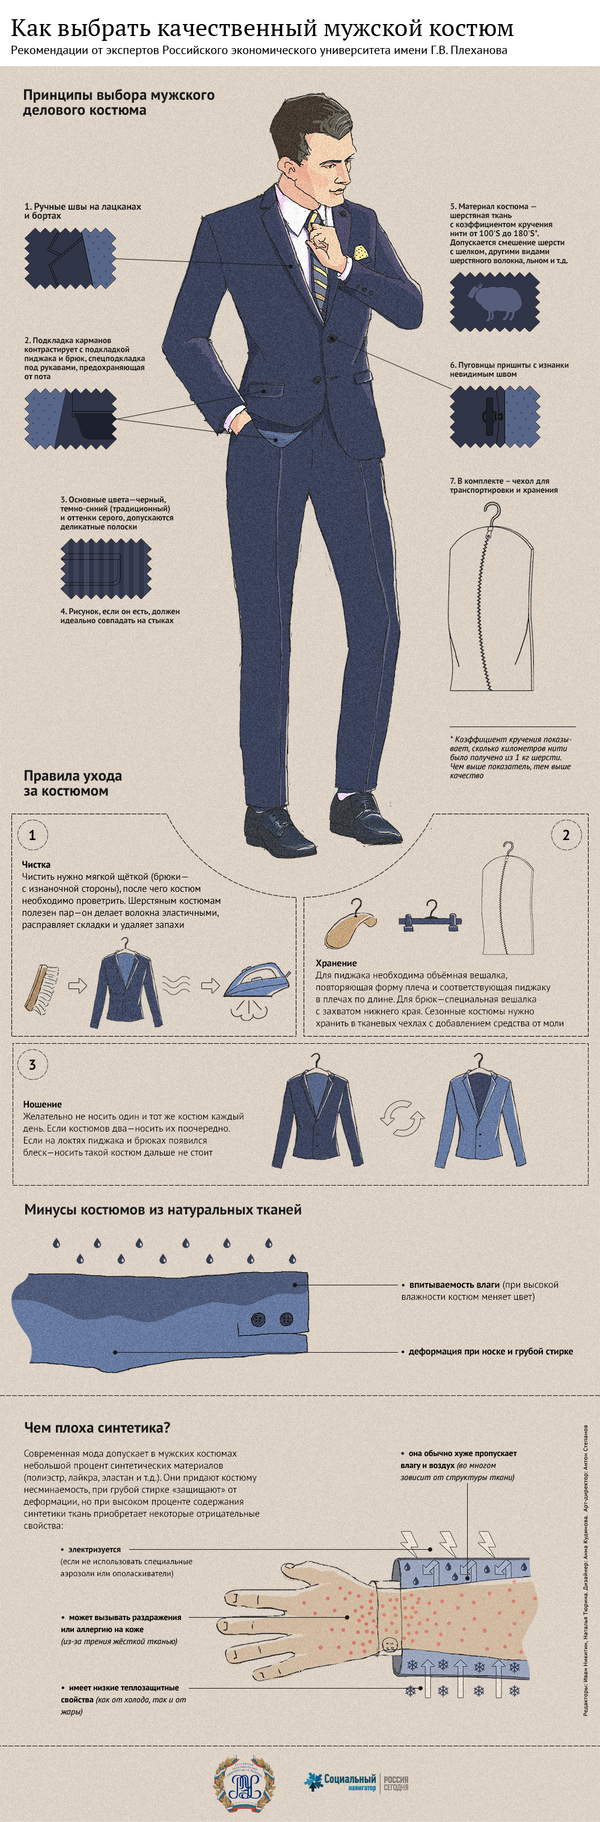 Как выбрать качественный мужской костюм - Sputnik Абхазия